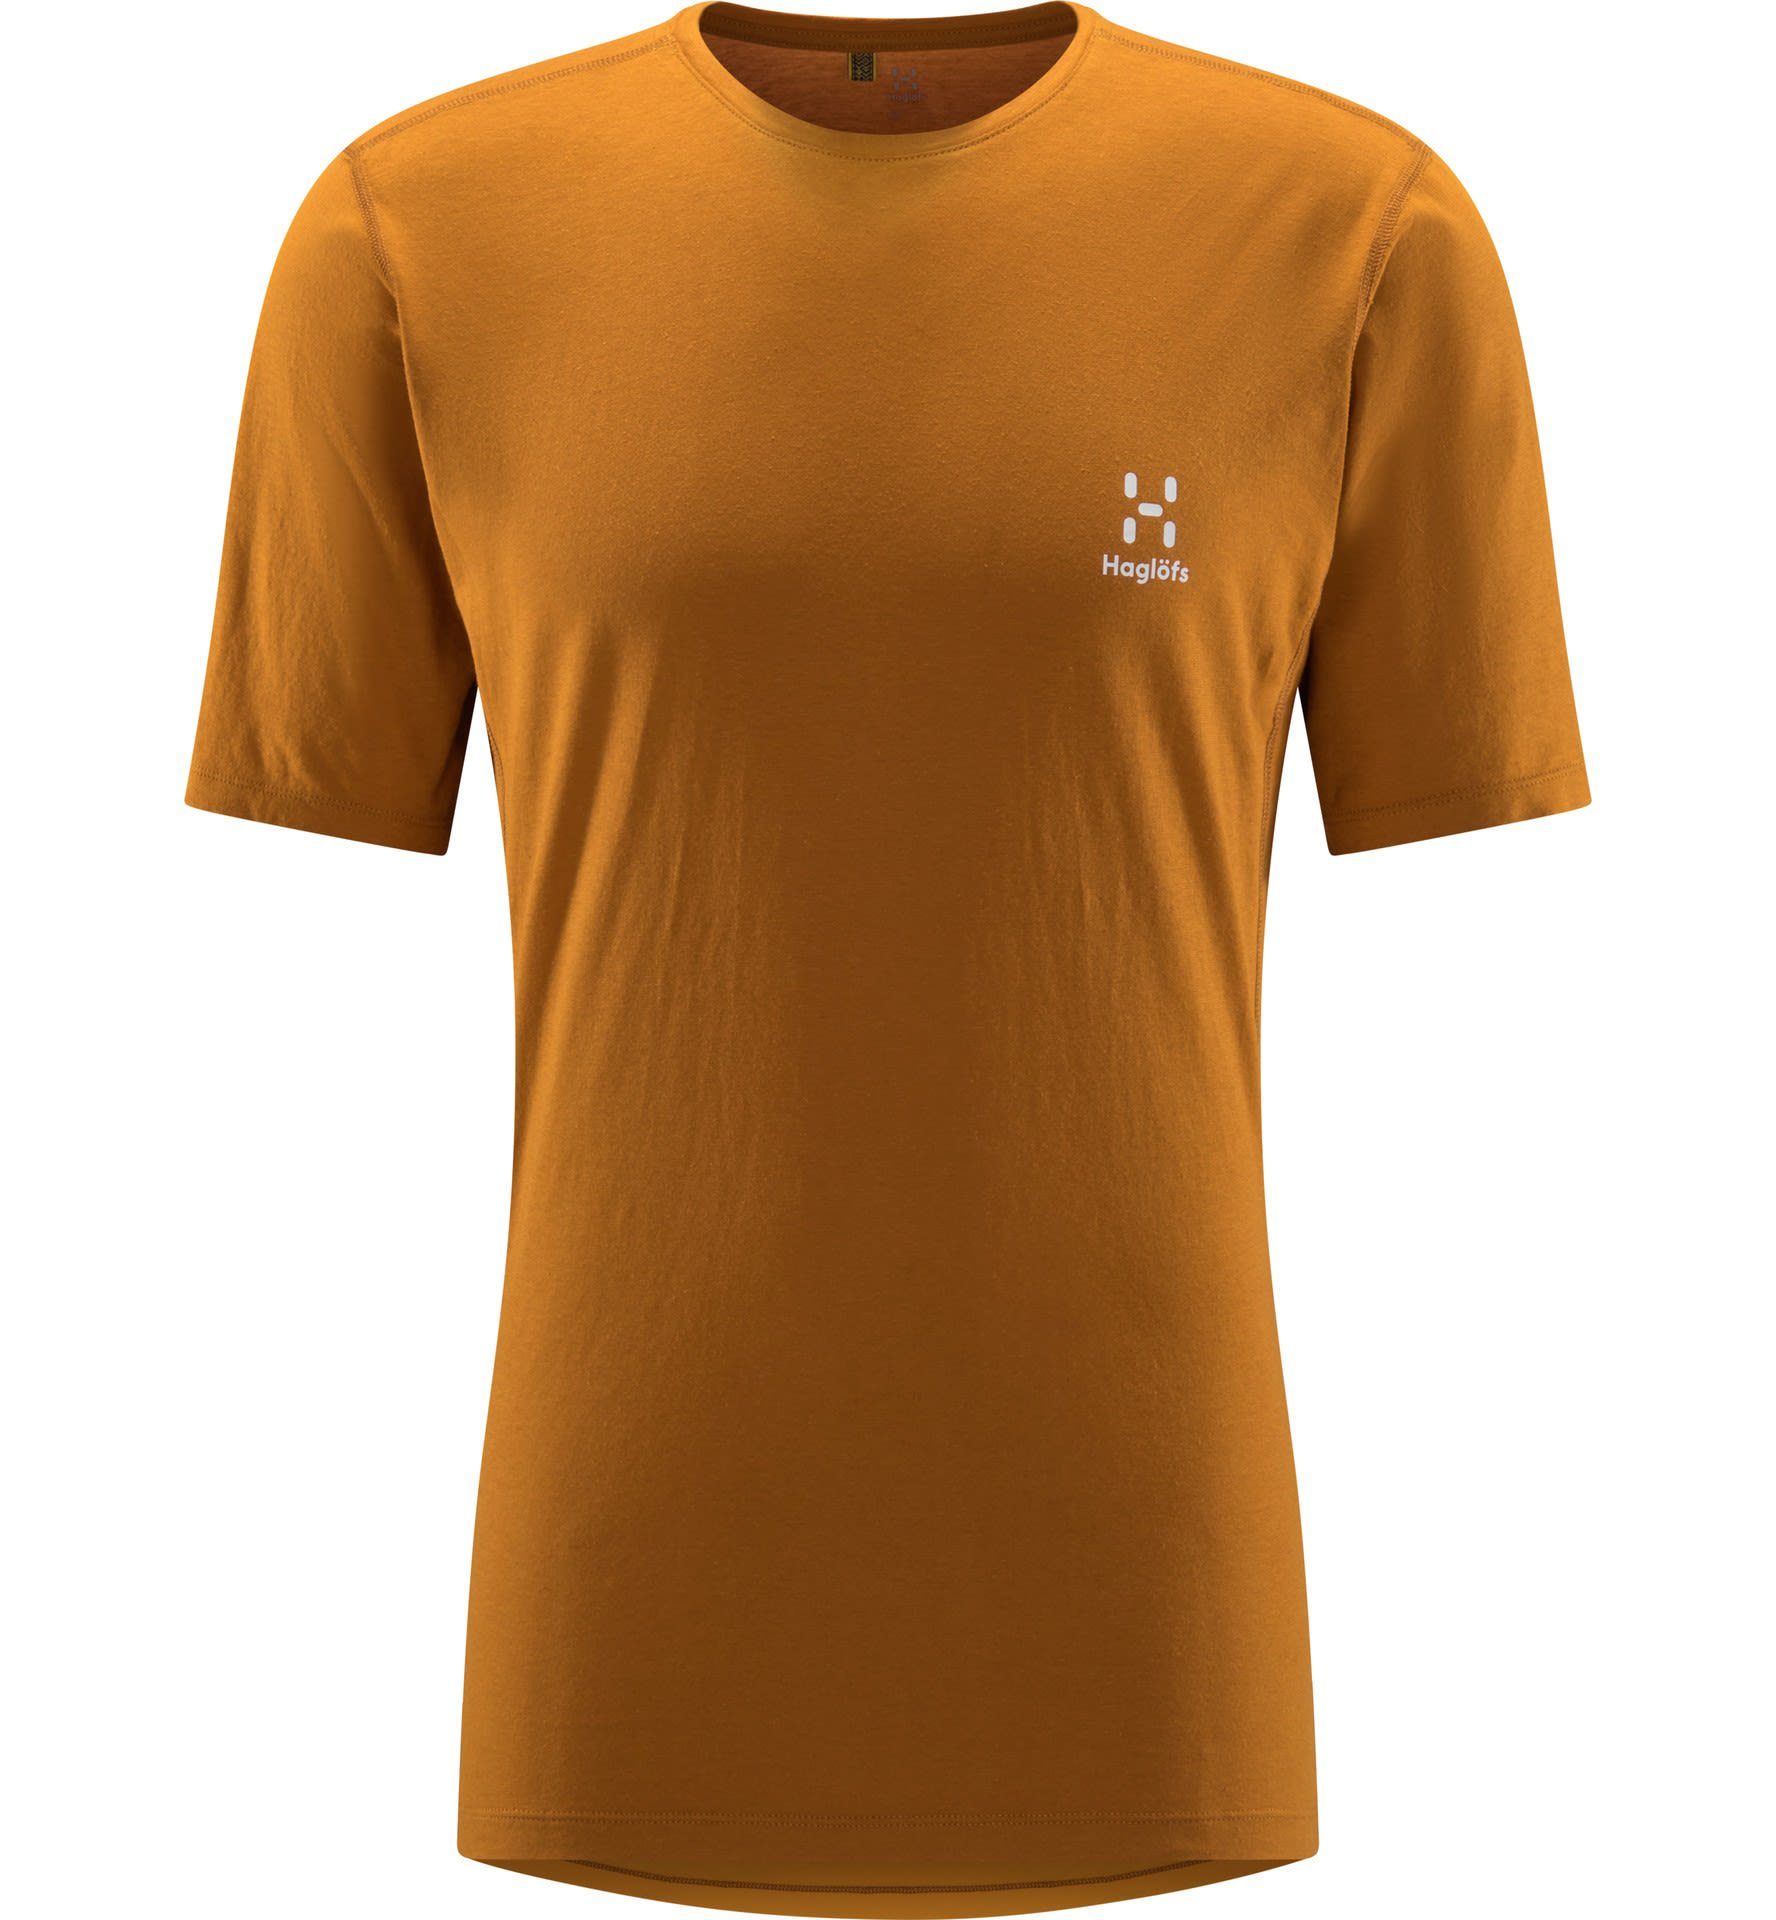 Brown Tee Yellow Roc Grip - Herren Golden T-Shirt M Haglöfs Kurzarm-Shirt Sunny Haglöfs